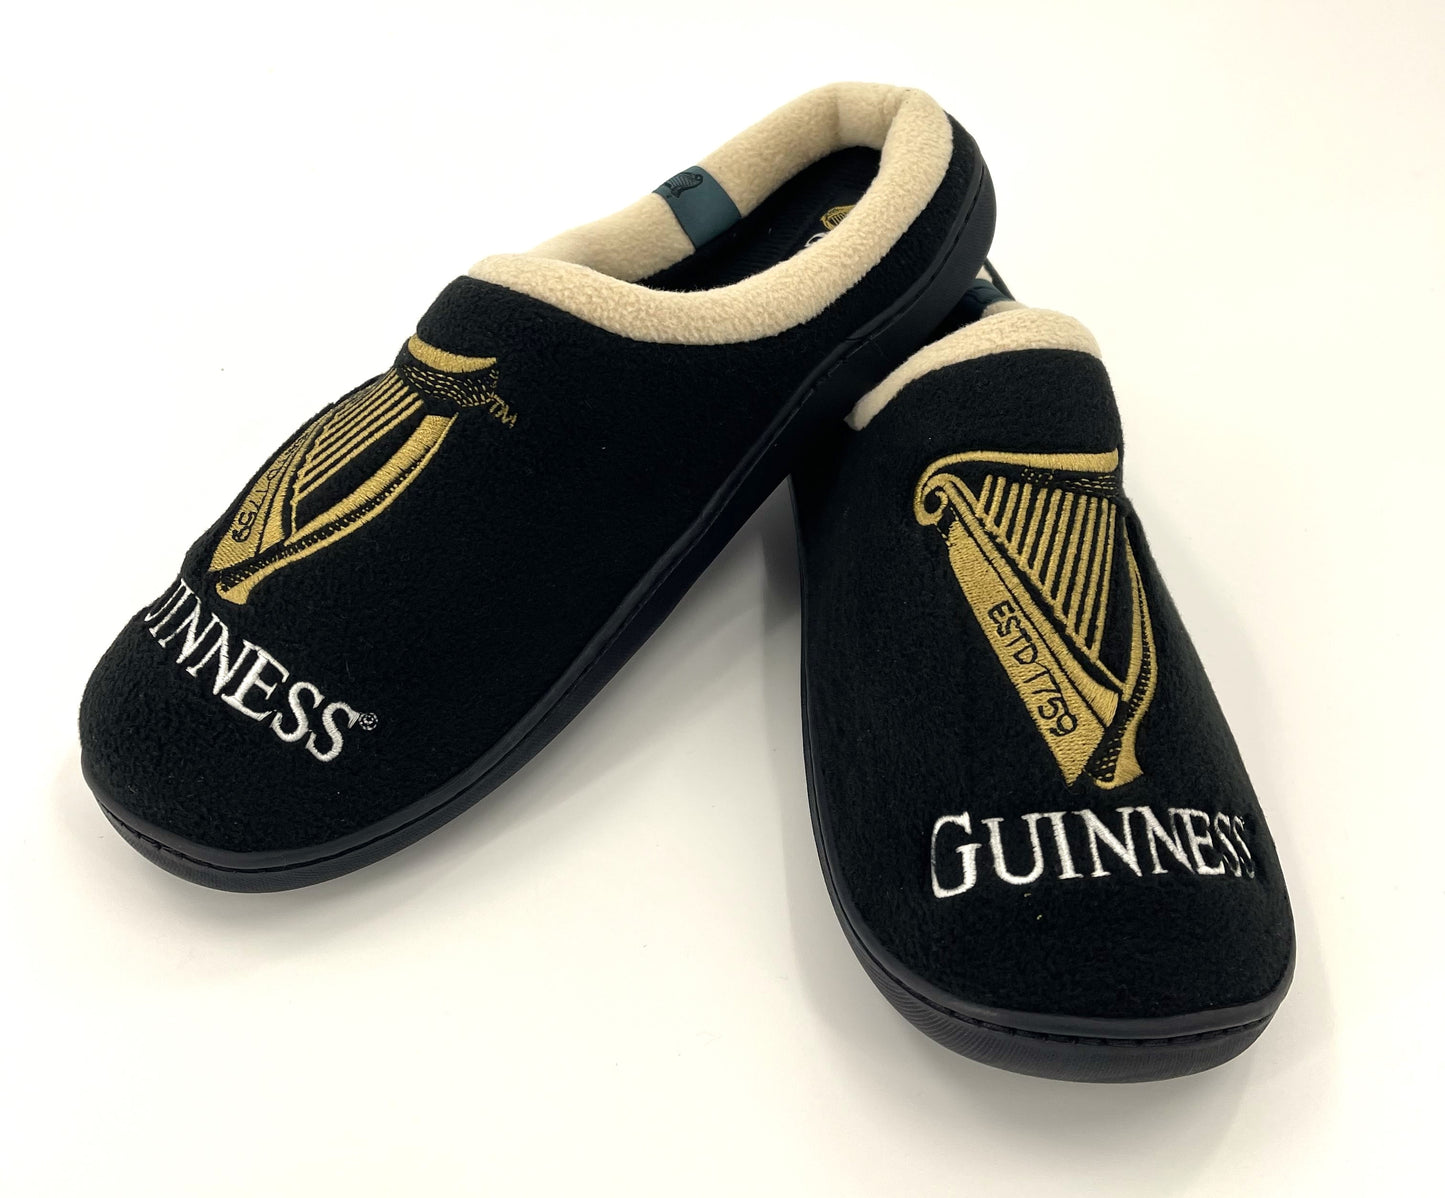 Guinness Harp Men's Slip-On Mule Slippers